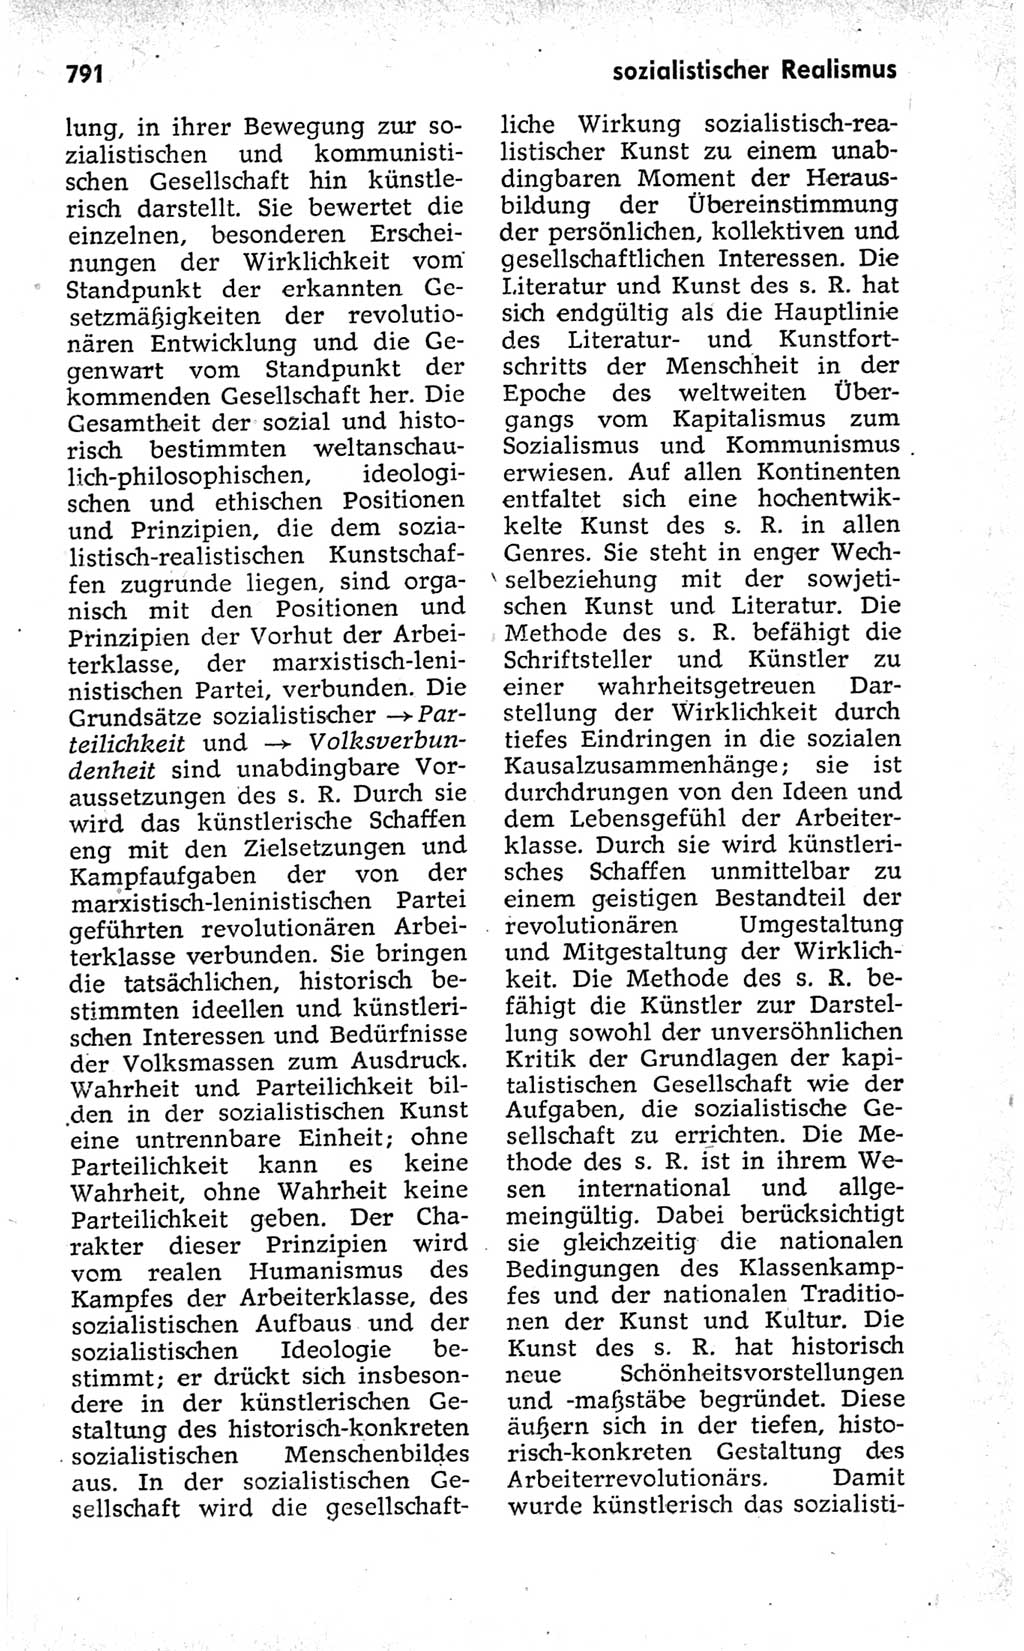 Kleines politisches Wörterbuch [Deutsche Demokratische Republik (DDR)] 1973, Seite 791 (Kl. pol. Wb. DDR 1973, S. 791)